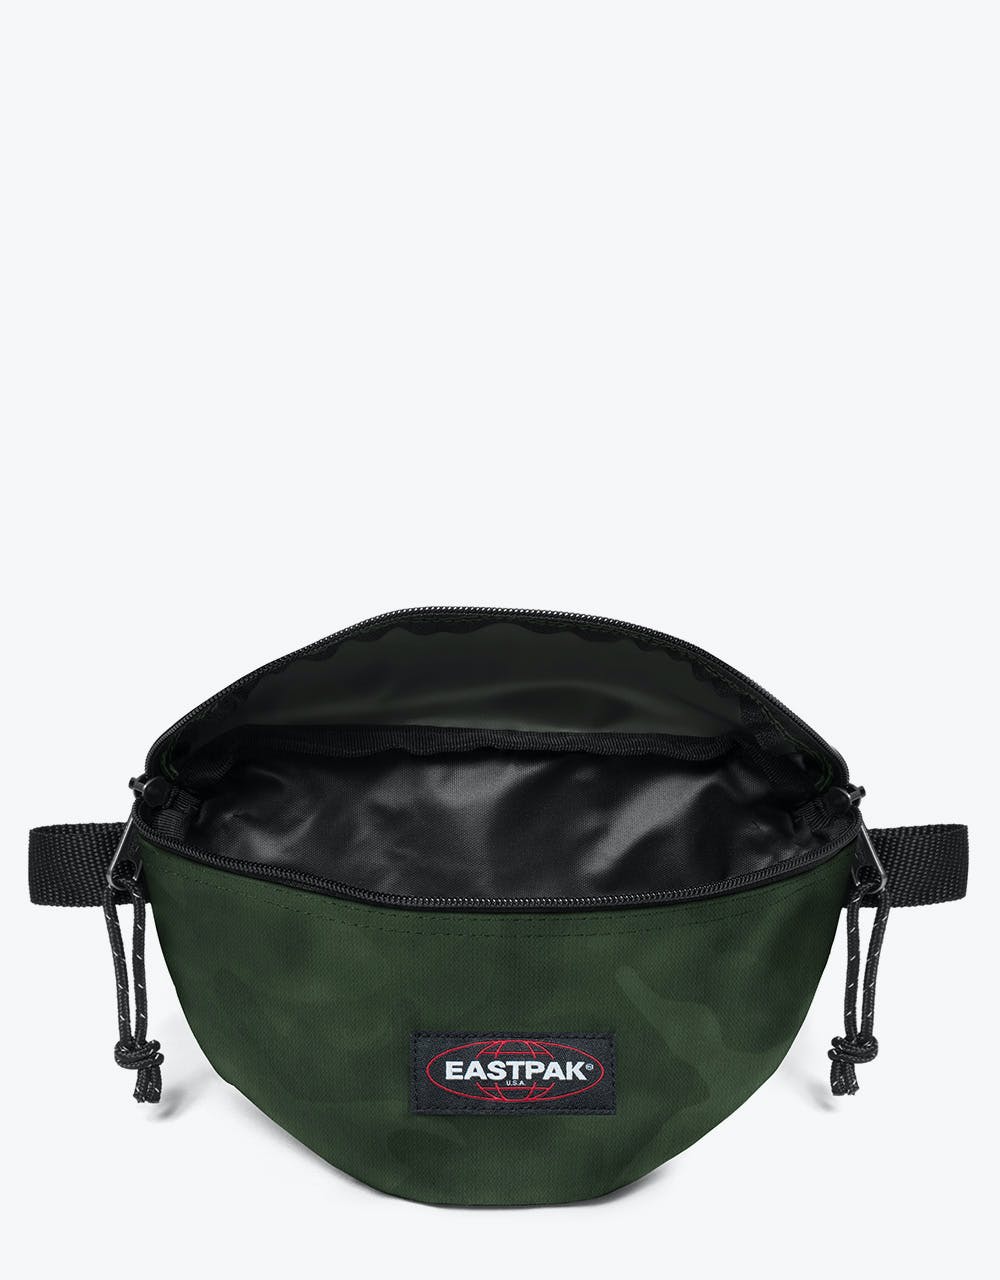 Eastpak Springer Cross Body Bag - Tonal Camo Khak